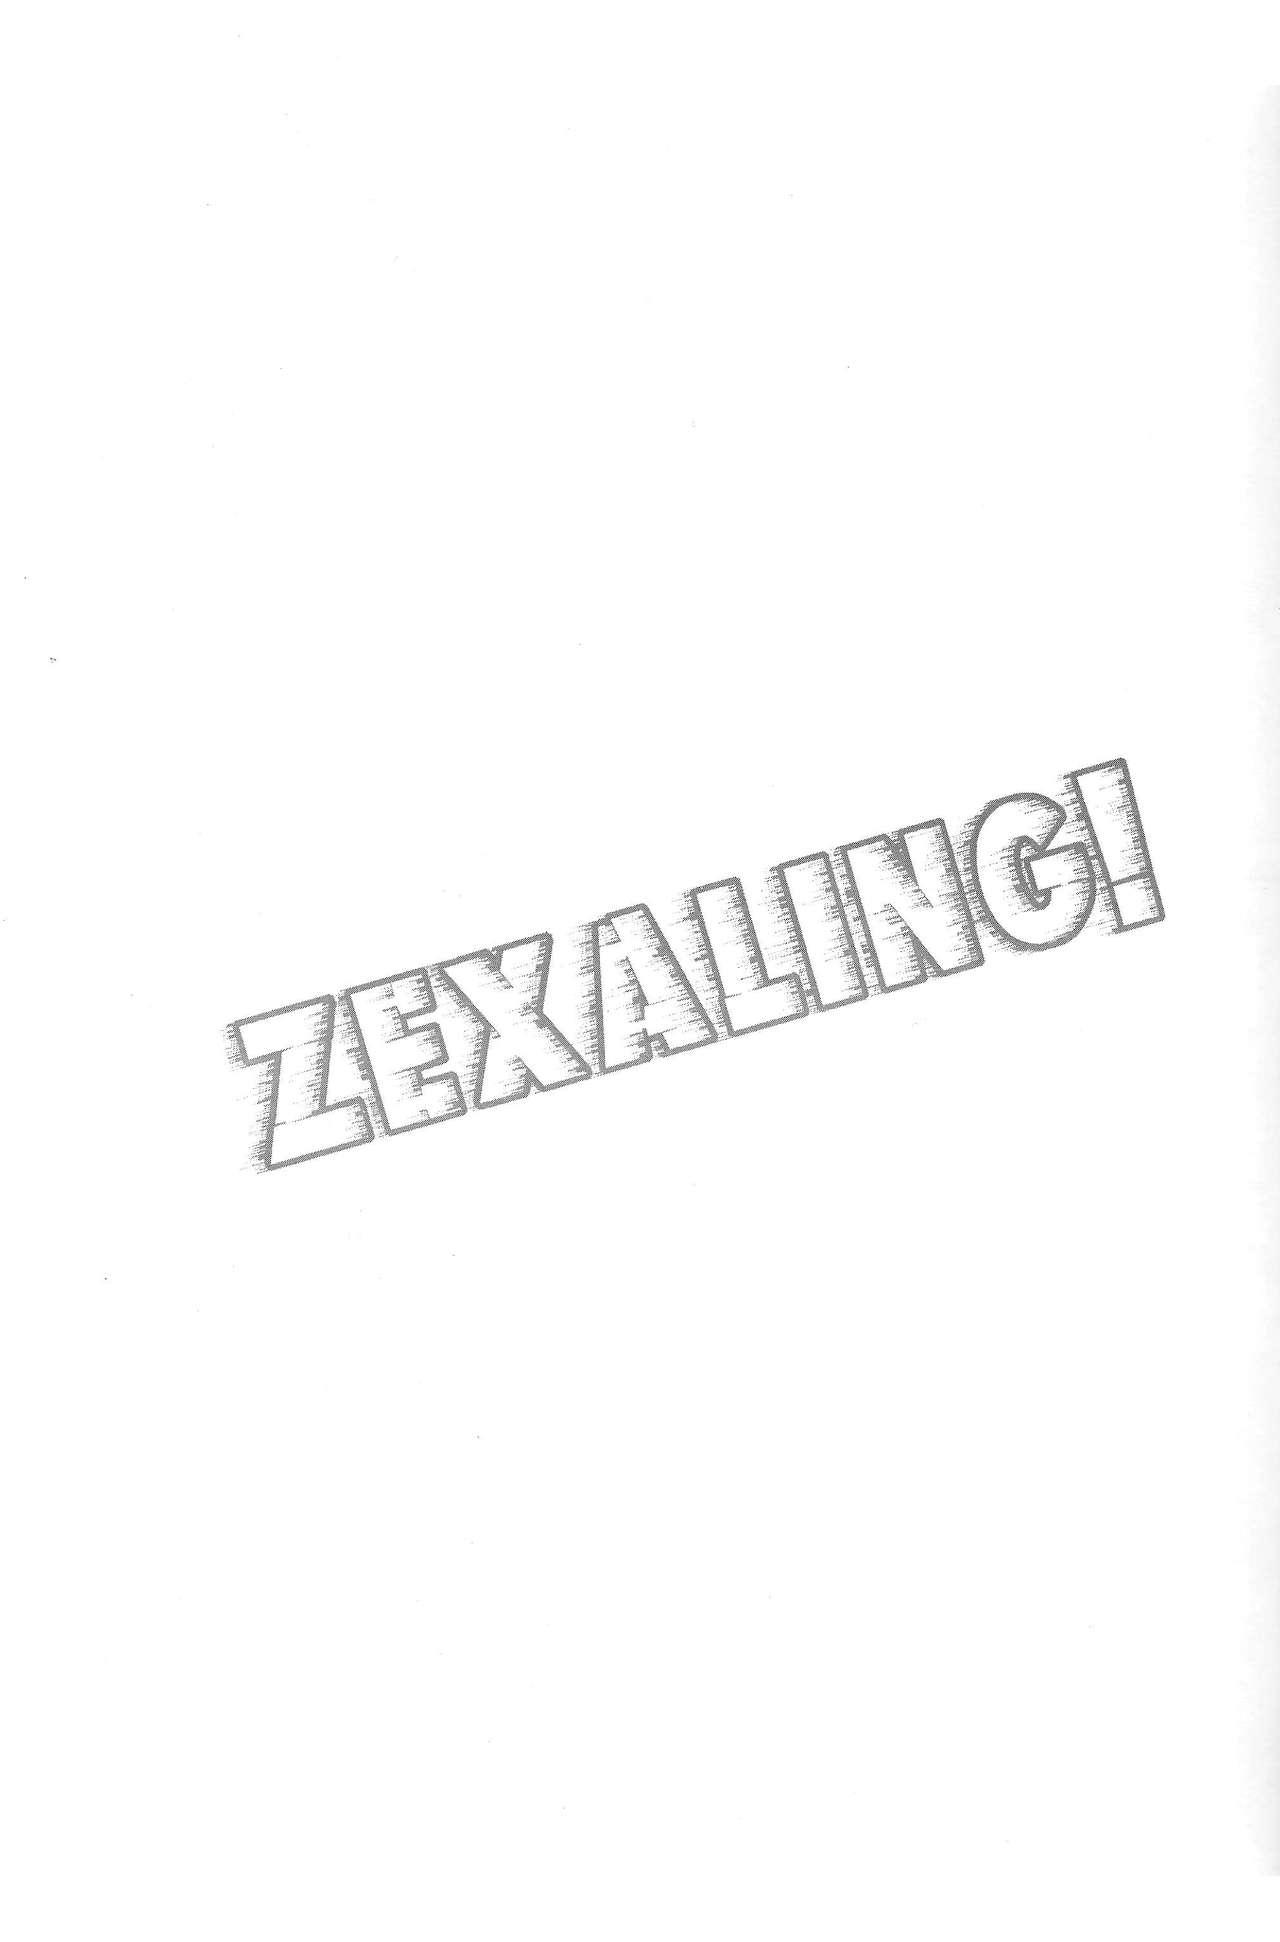 ZEXALING! 1